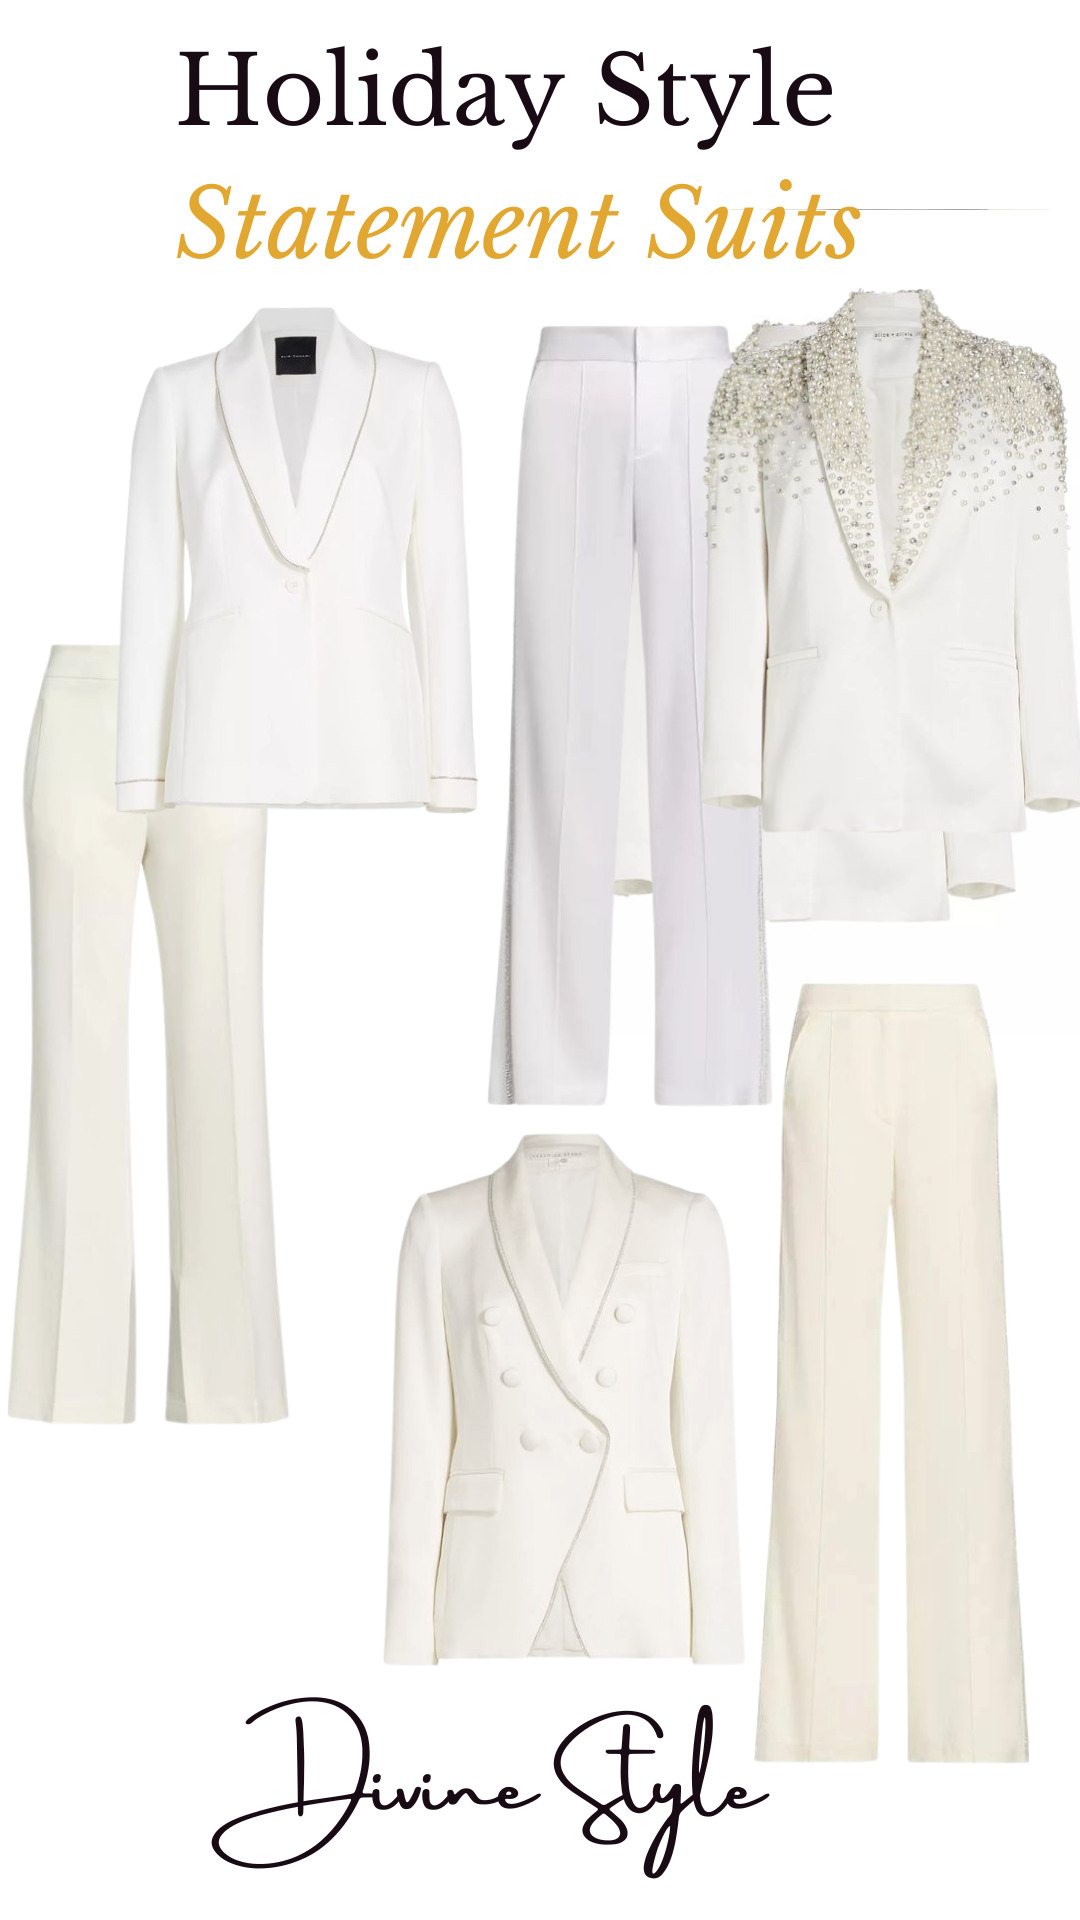 Holiday Wardrobe Checklist, winter white statement suits, white embellished blazers